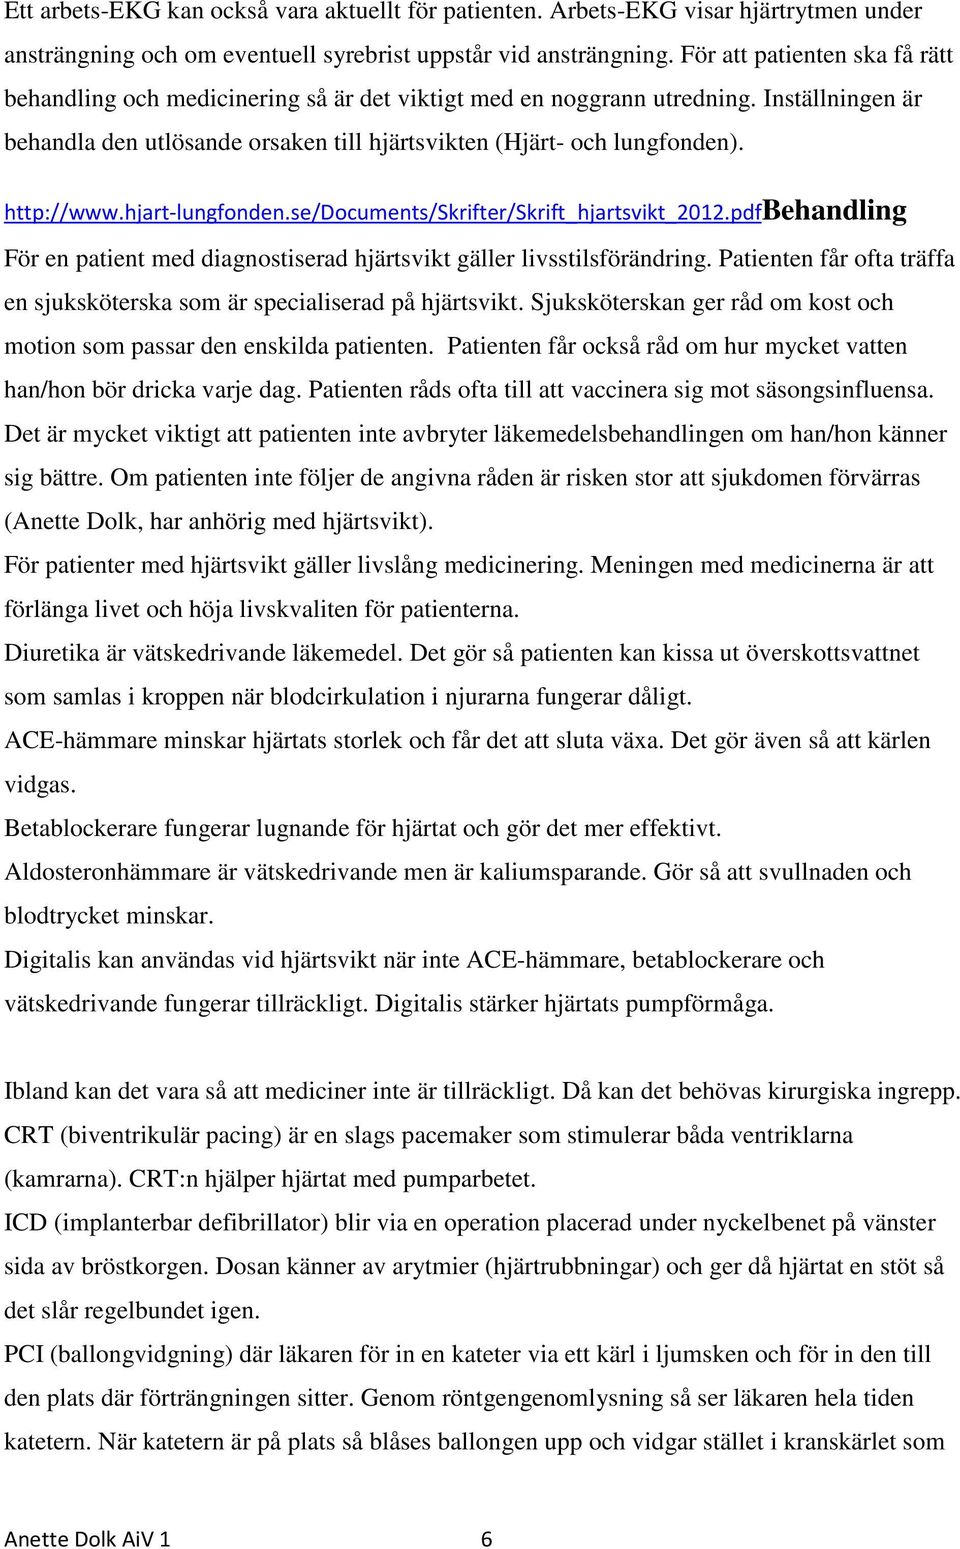 http://www.hjart-lungfonden.se/documents/skrifter/skrift_hjartsvikt_2012.pdfbehandling För en patient med diagnostiserad hjärtsvikt gäller livsstilsförändring.